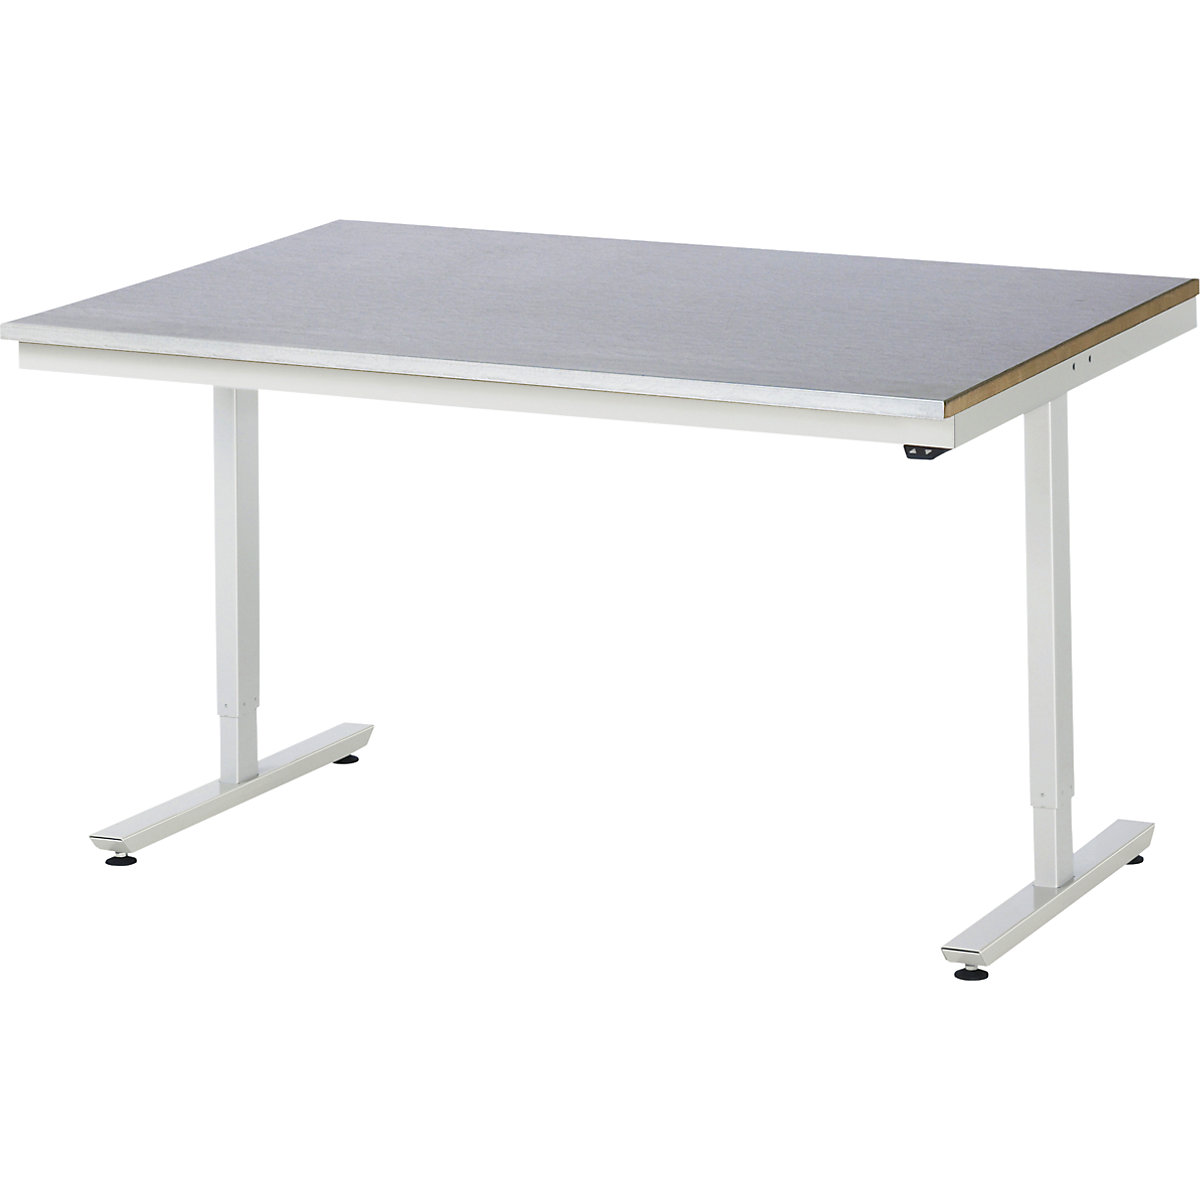 Psací stůl s elektrickým přestavováním výšky – RAU, ocelový povlak, nosnost 150 kg, š x h 1500 x 1000 mm-10